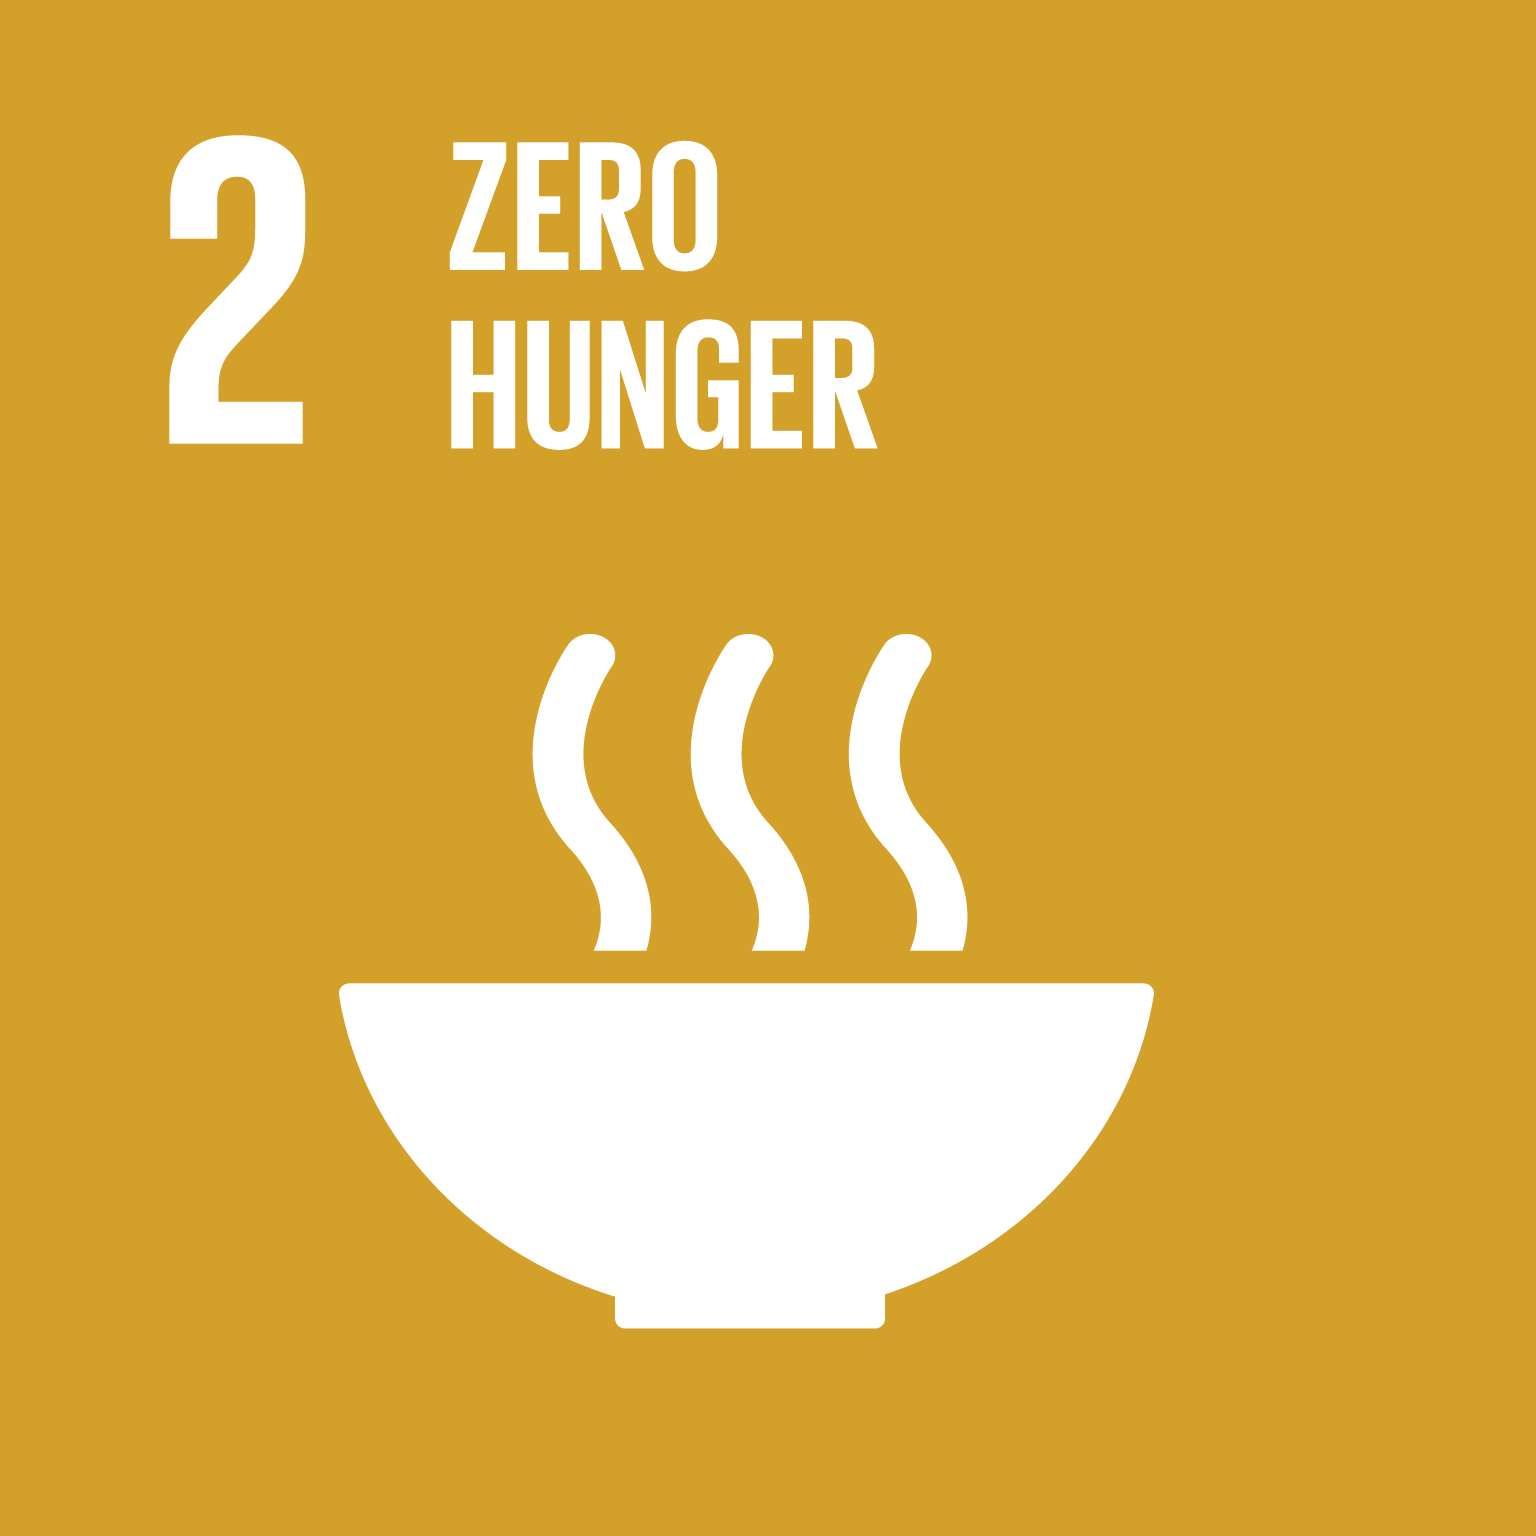 2: Zero Hunger